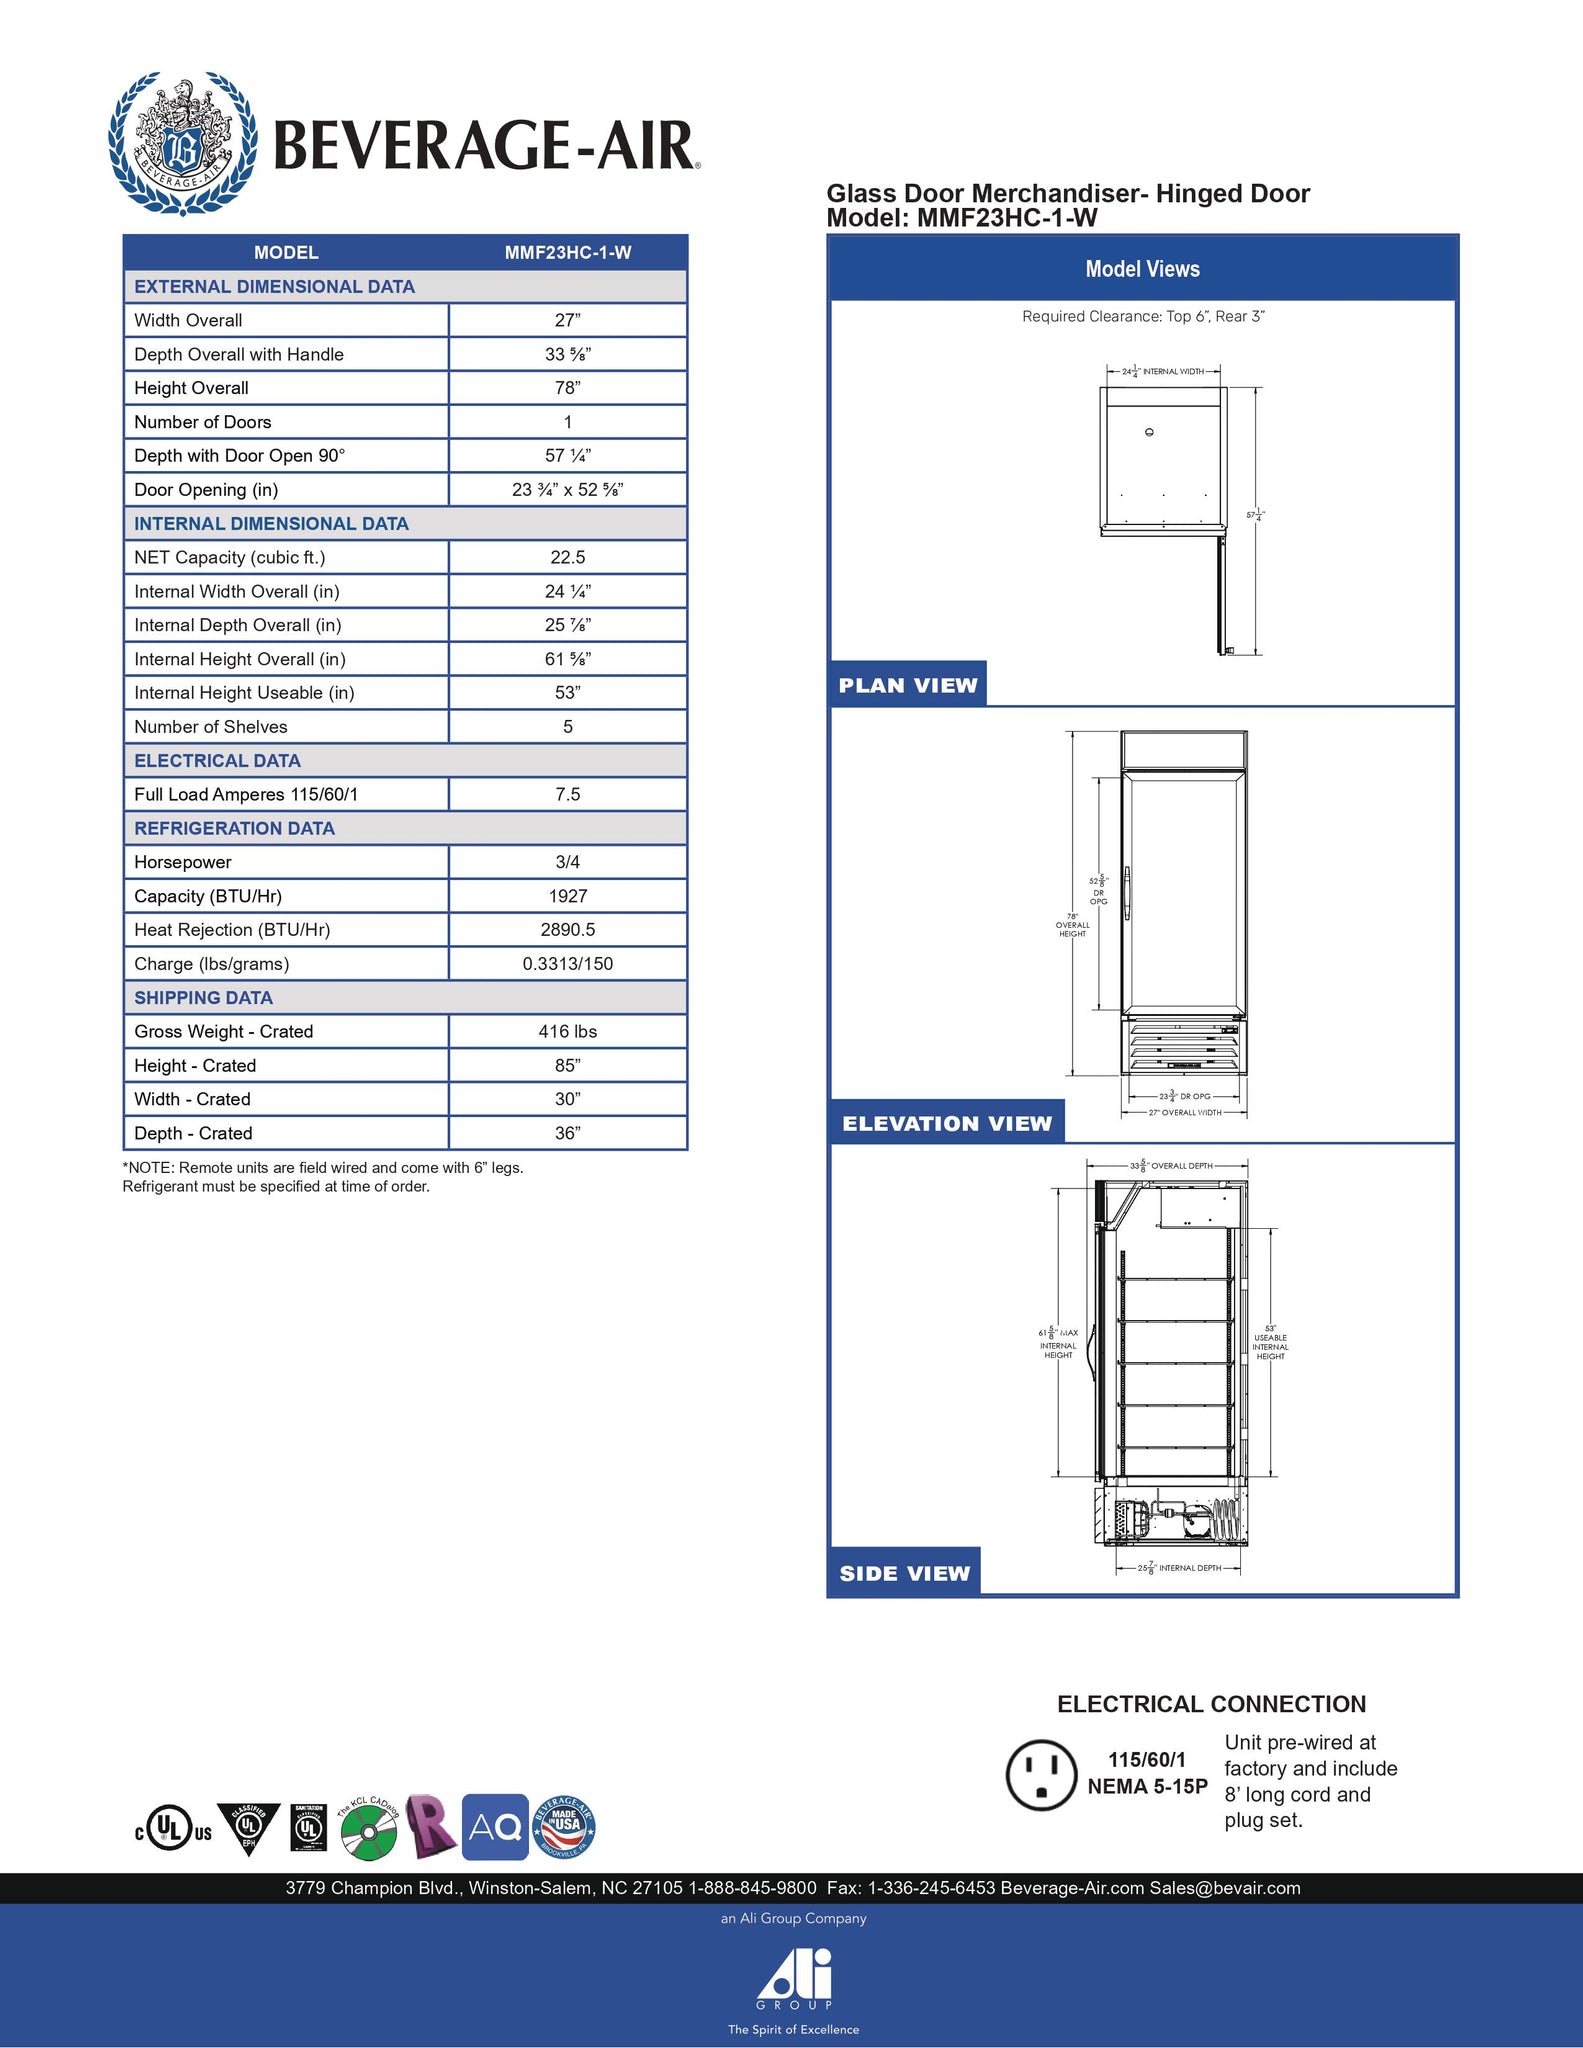 Beverage-Air MMF23HC-1-W 27" MarketMax Series One Section Glass Door Merchandiser Freezer in White